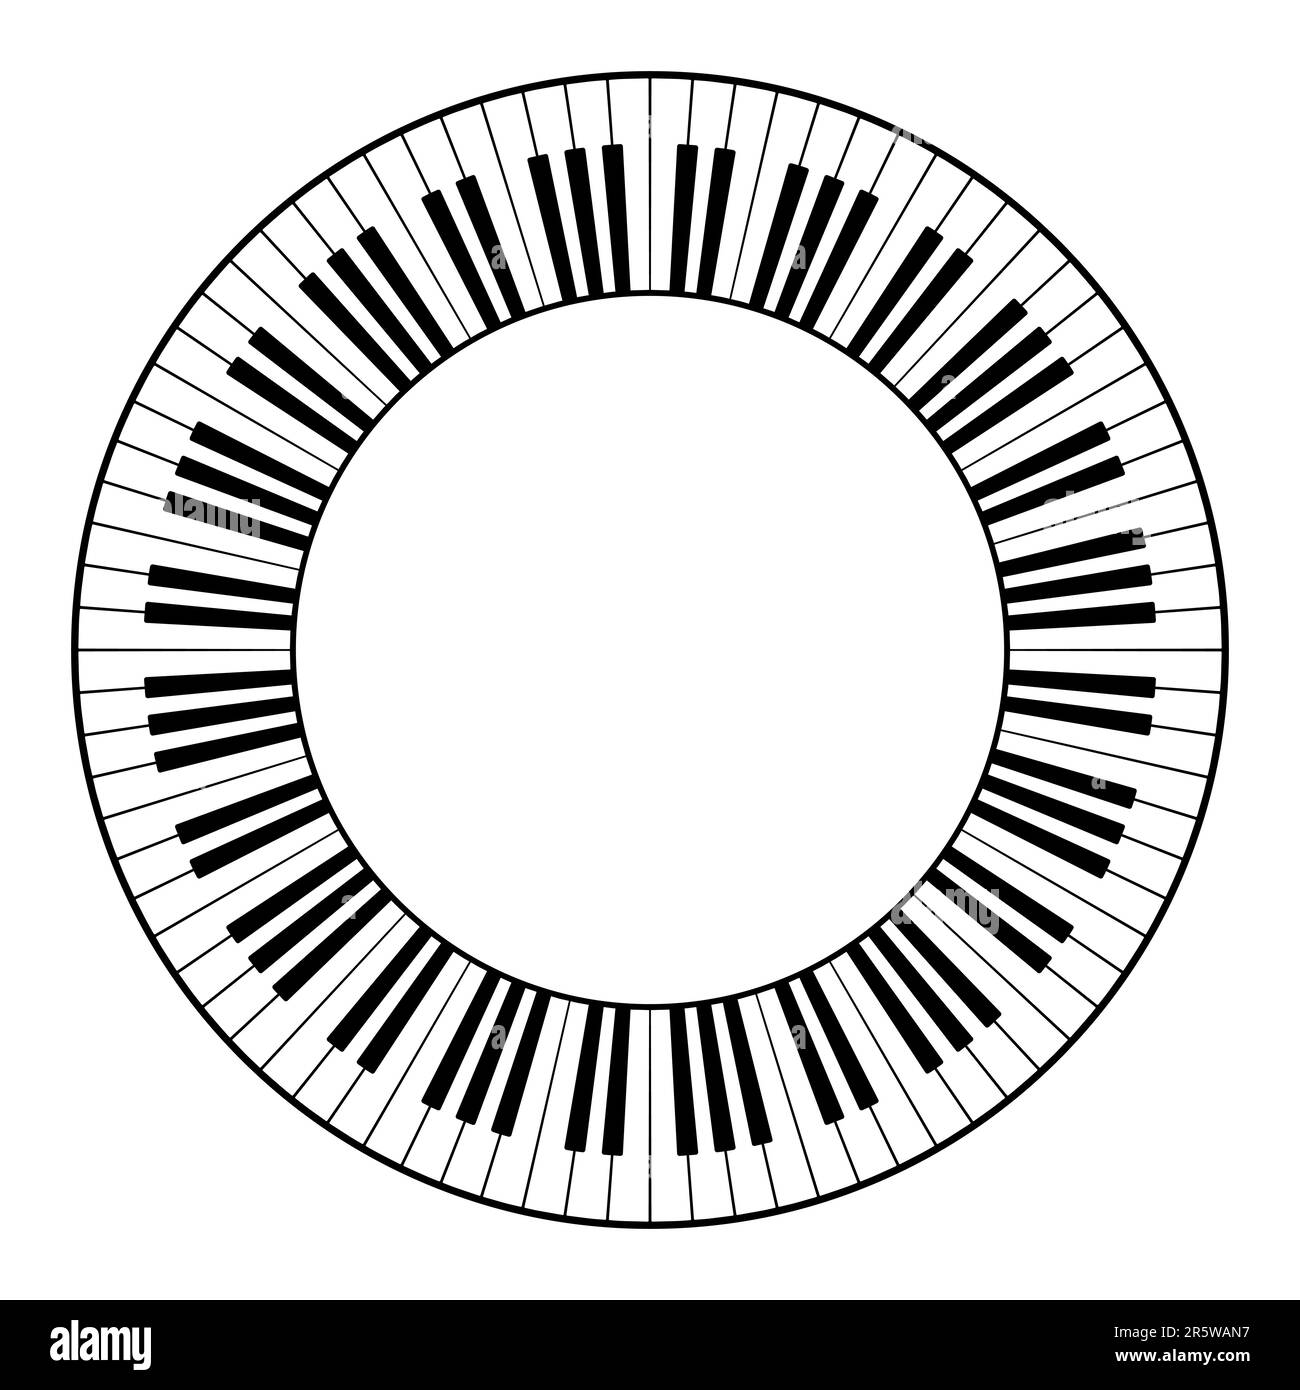 Musiktastatur mit zwölf Oktaven, kreisförmigem Rahmen. Dekorativer Rahmen, bestehend aus zwölf Oktaven, schwarz-weiße Tasten der Klaviertastatur. Stockfoto